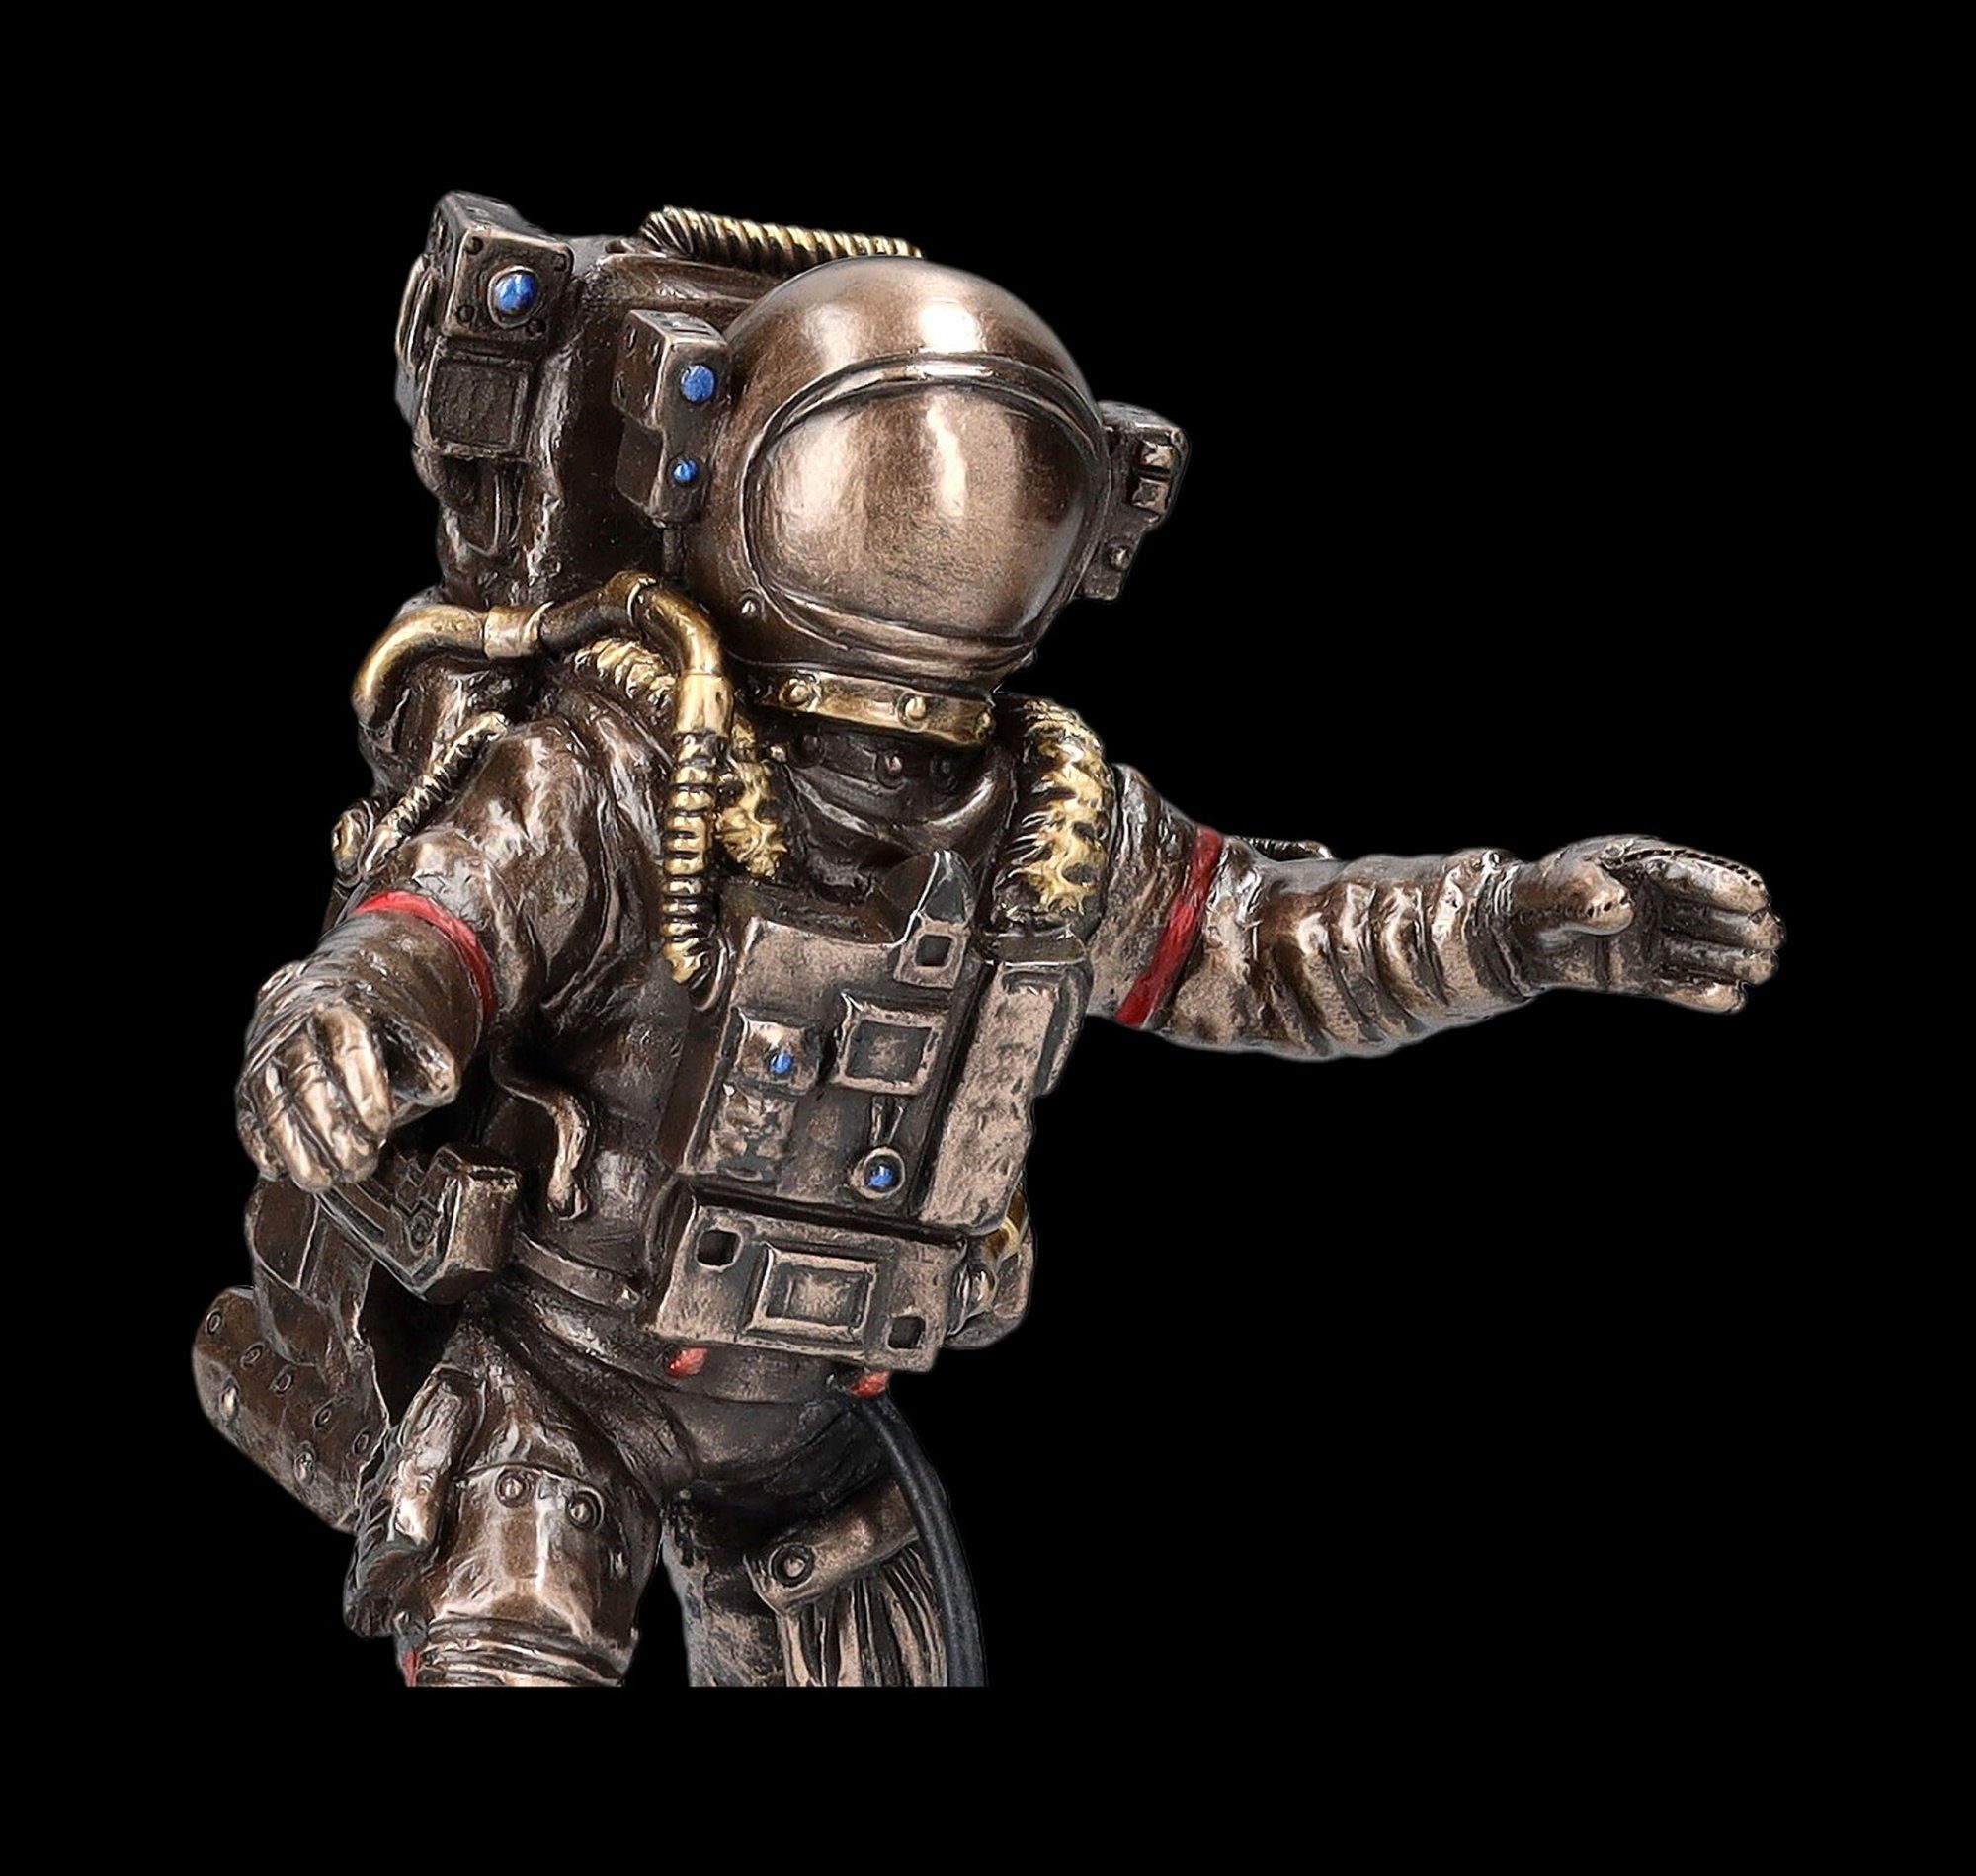 Weltall Shop - Dekofigur Raumfahrt Figuren - Mond Fantasy Figur Veronese auf Astronauten Dekofigur GmbH